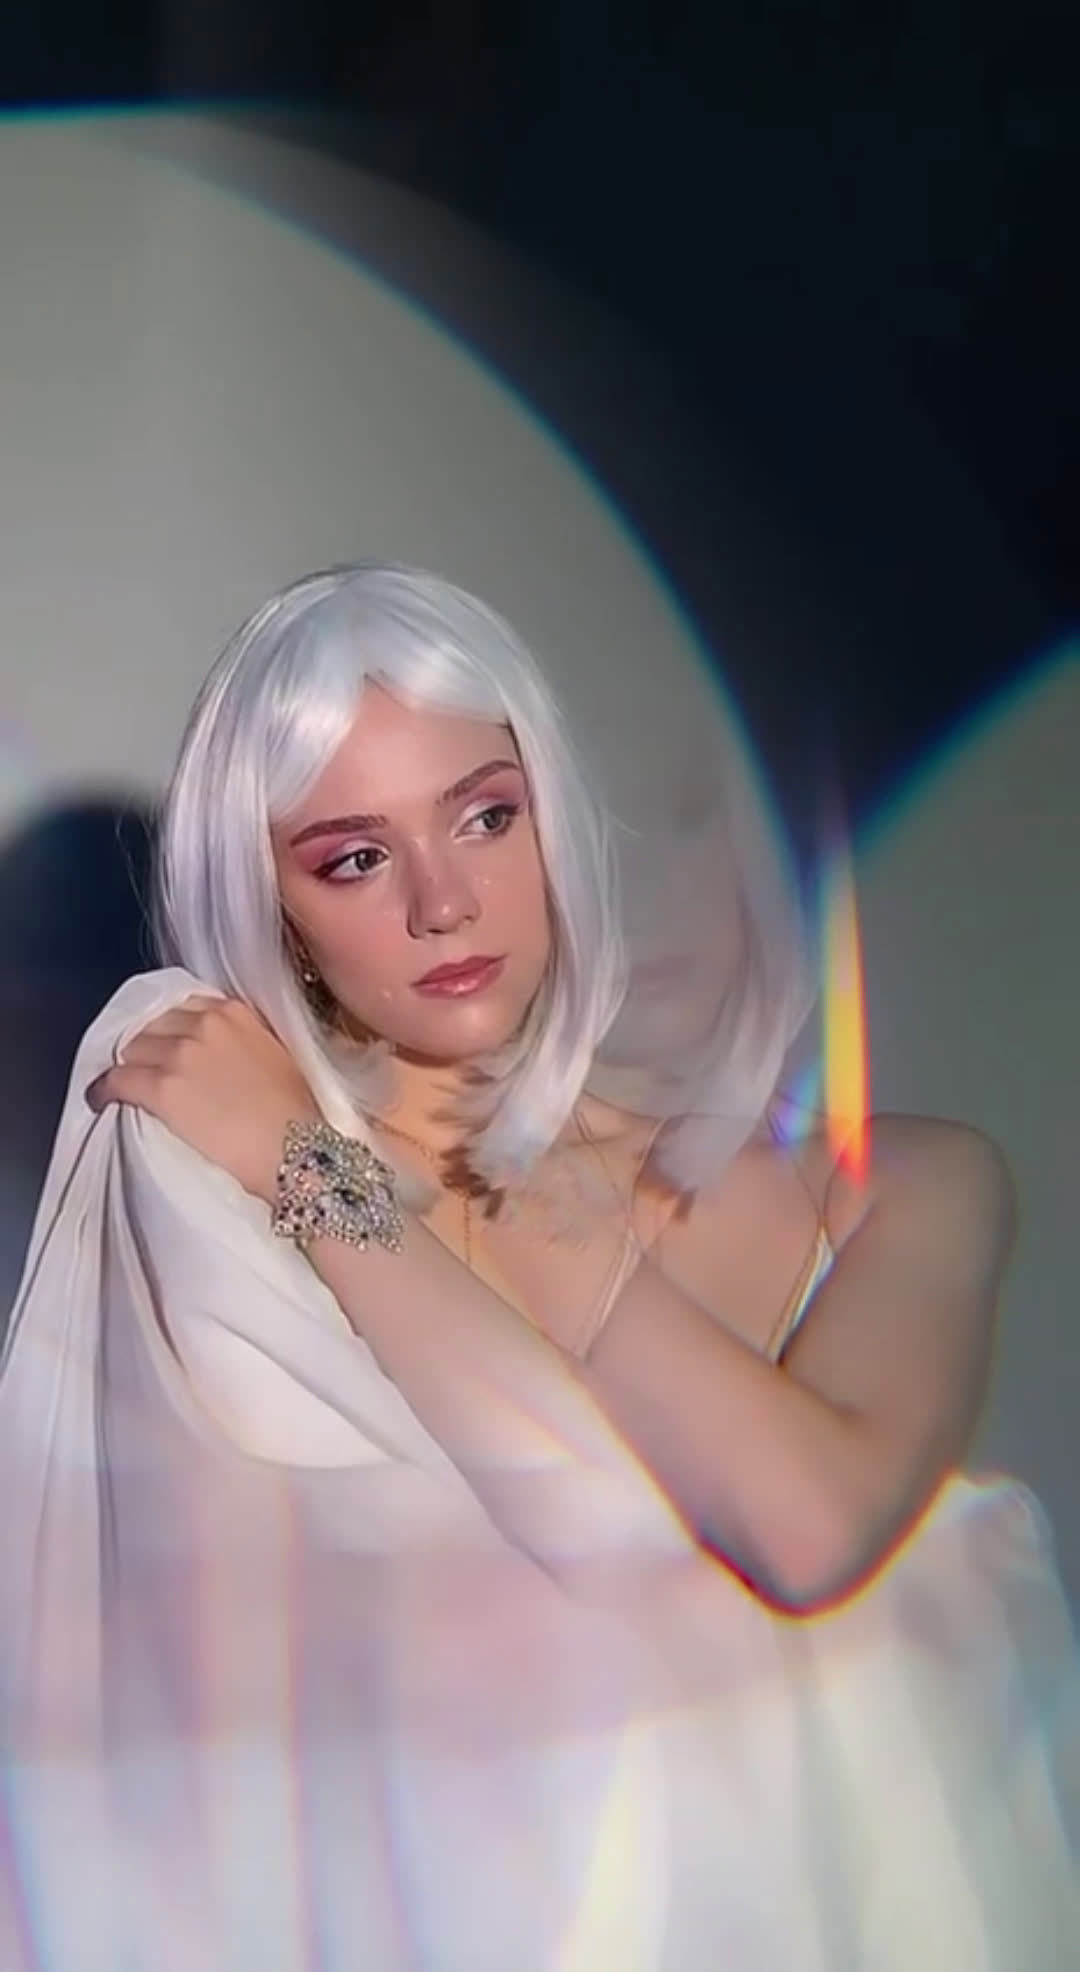 梅娃的白发造型太惊艳了 俄罗斯冰上女皇 梅德韦杰娃 晒出写真拍摄